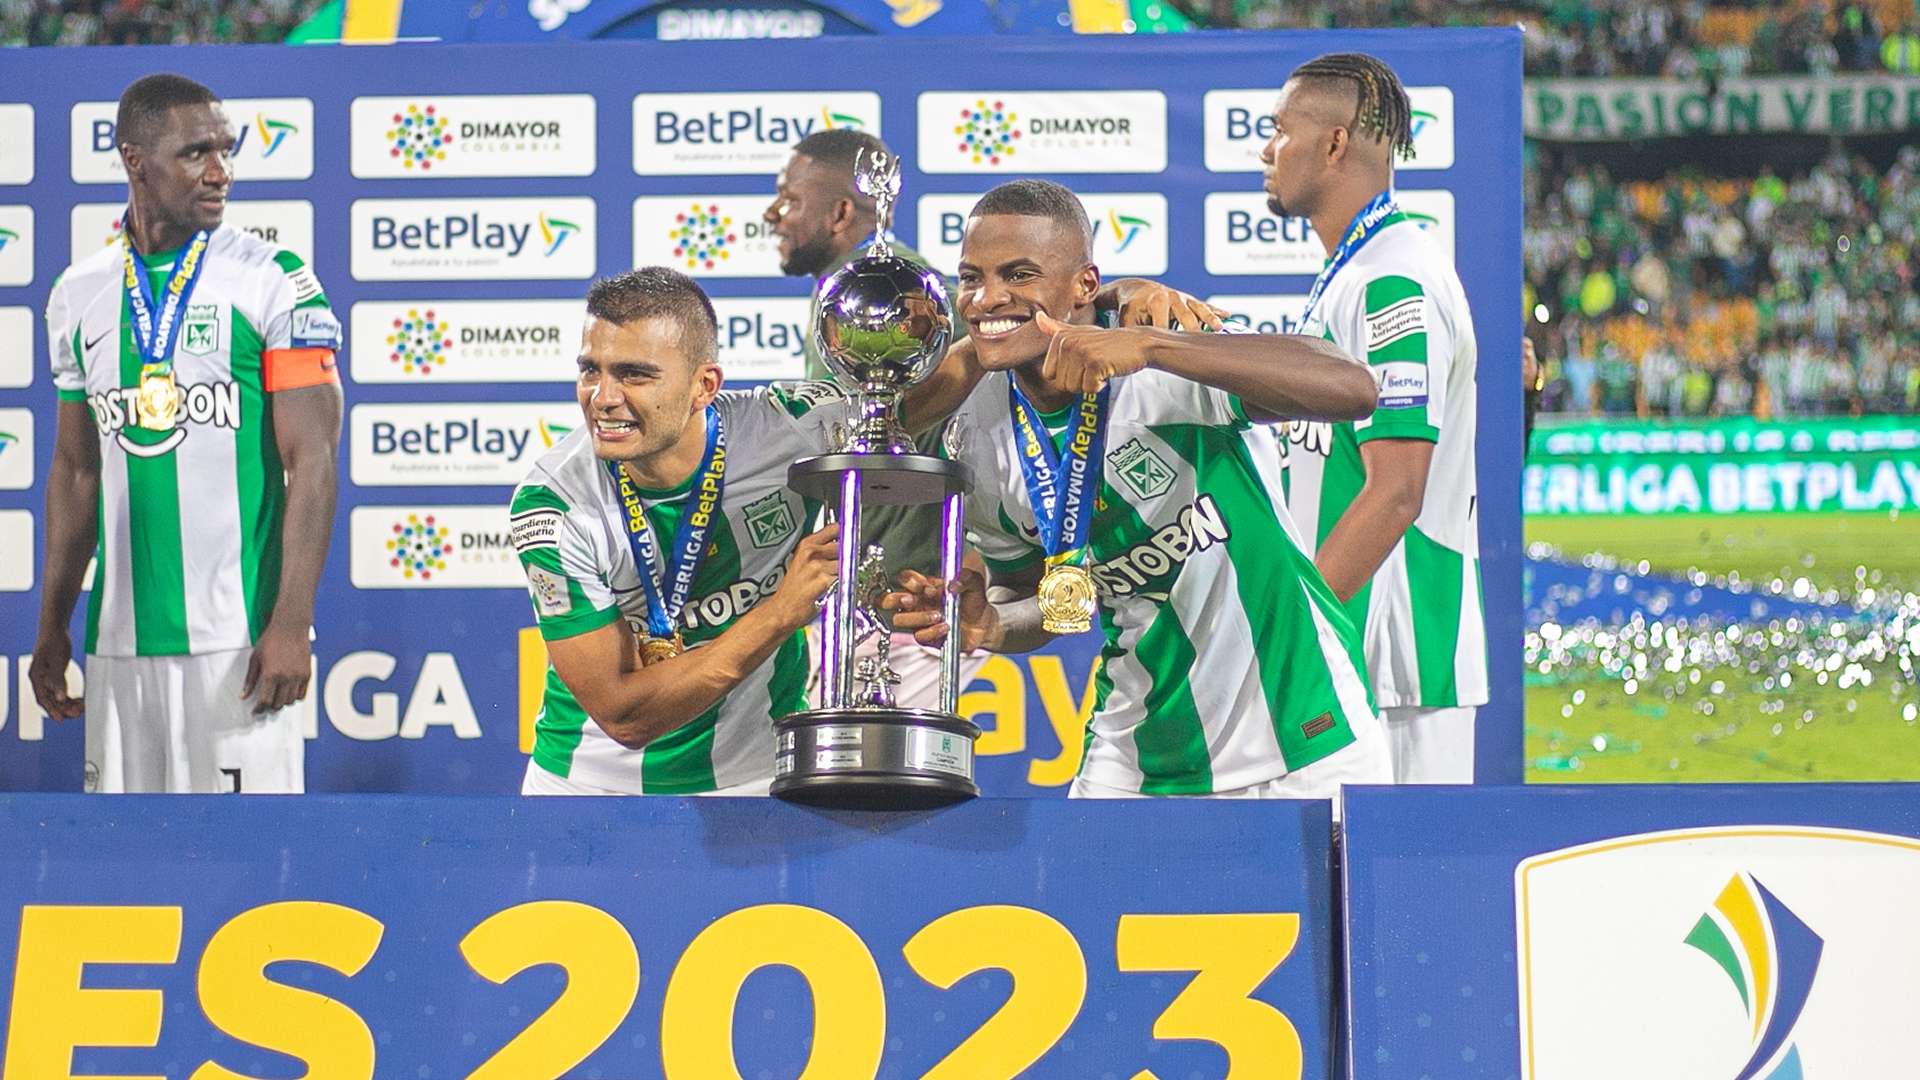 Atlético Nacional campeón Superliga 2023